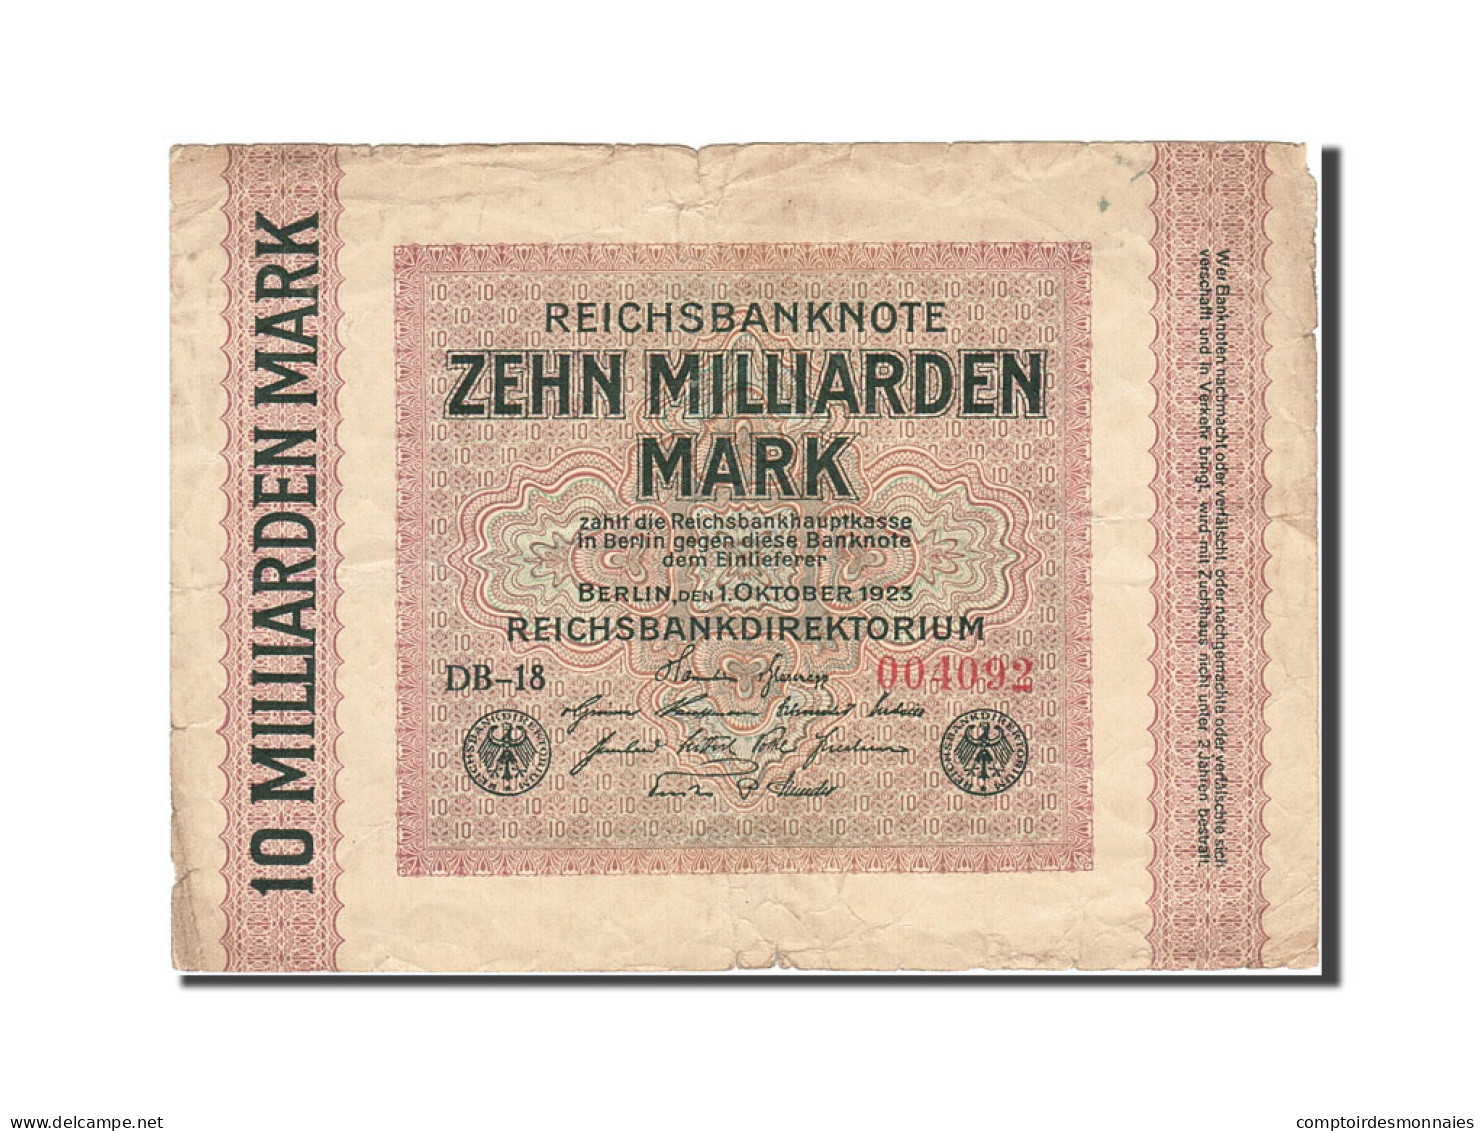 Billet, Allemagne, 10 Milliarden Mark, 1923, 1923-10-01, KM:117b, TB - 10 Milliarden Mark